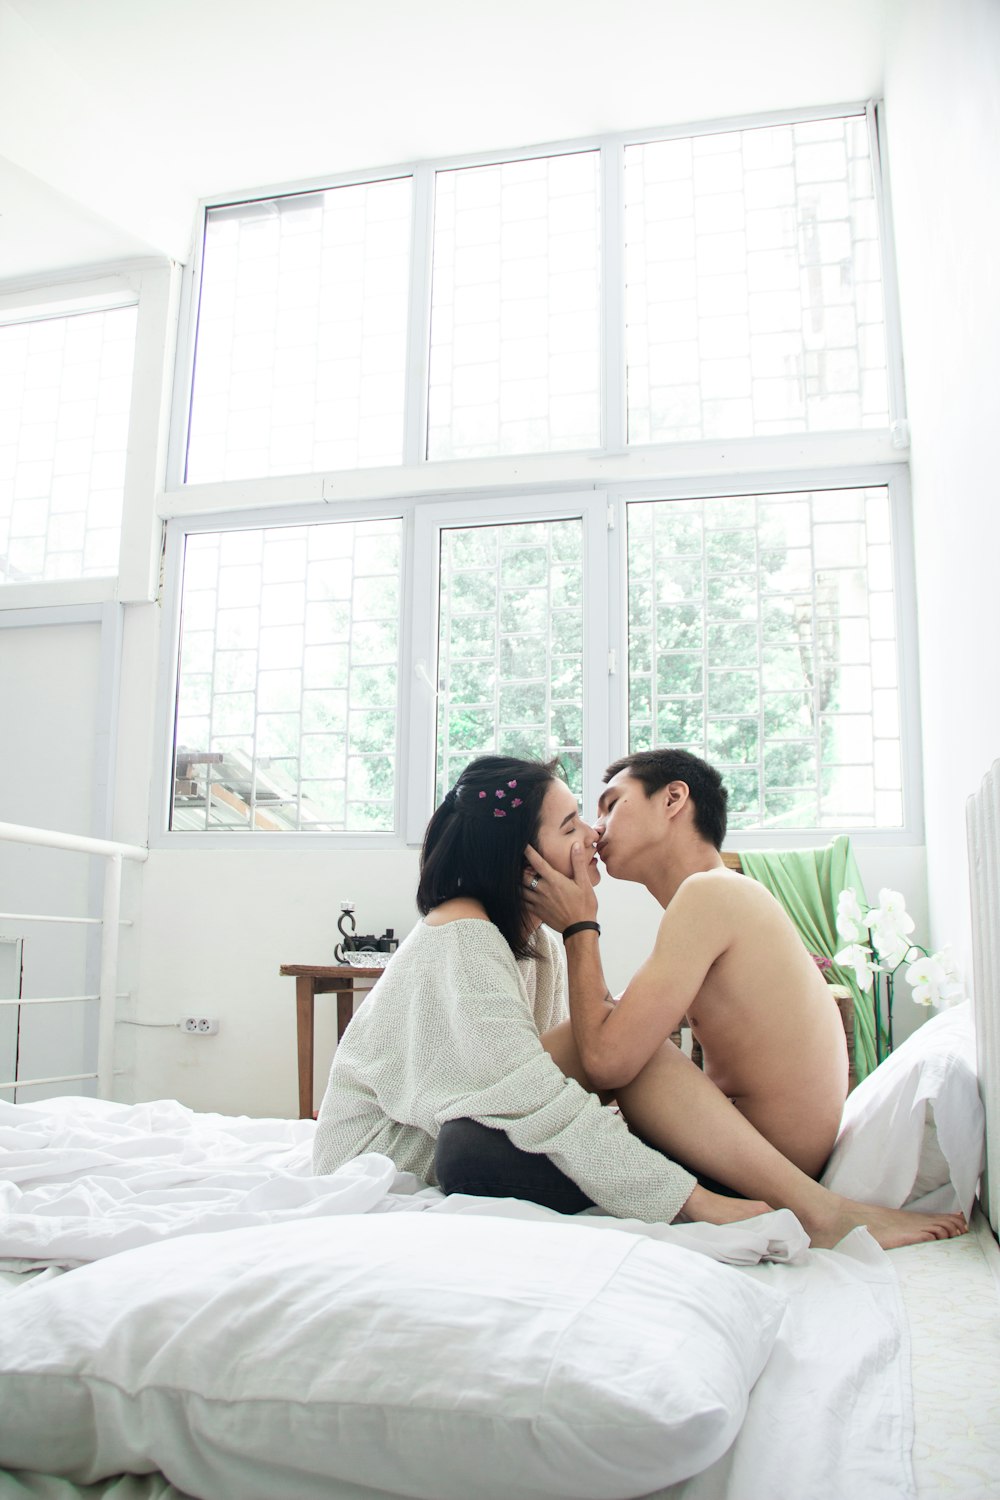 Más de 30,000 fotos de besos en la cama | Descargar imágenes gratis en  Unsplash